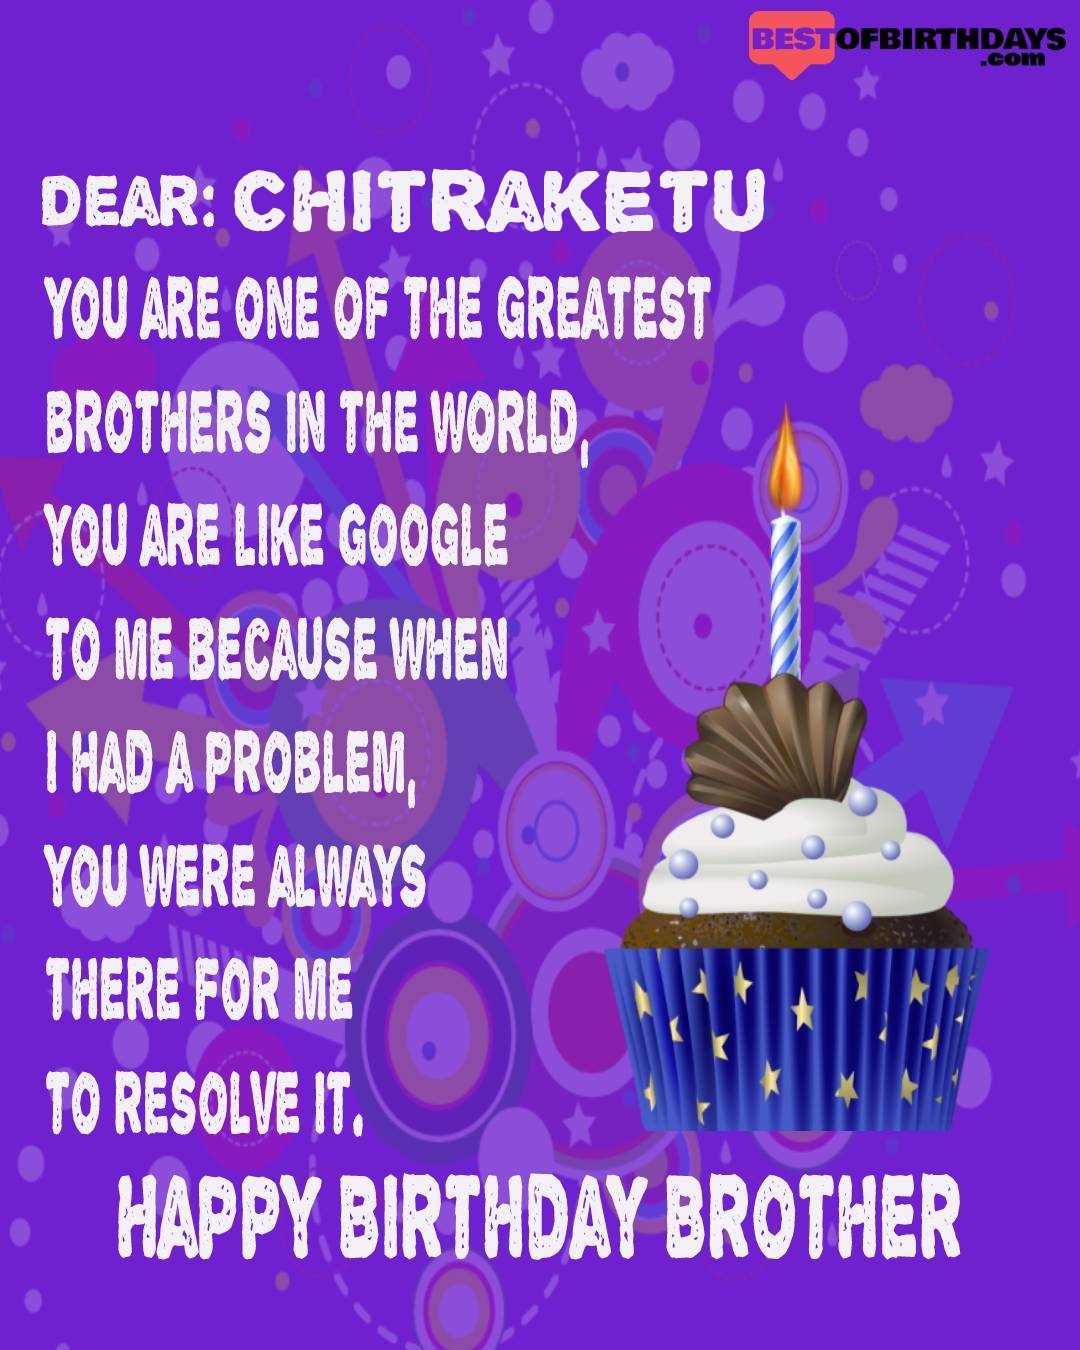 Happy birthday chitraketu bhai brother bro